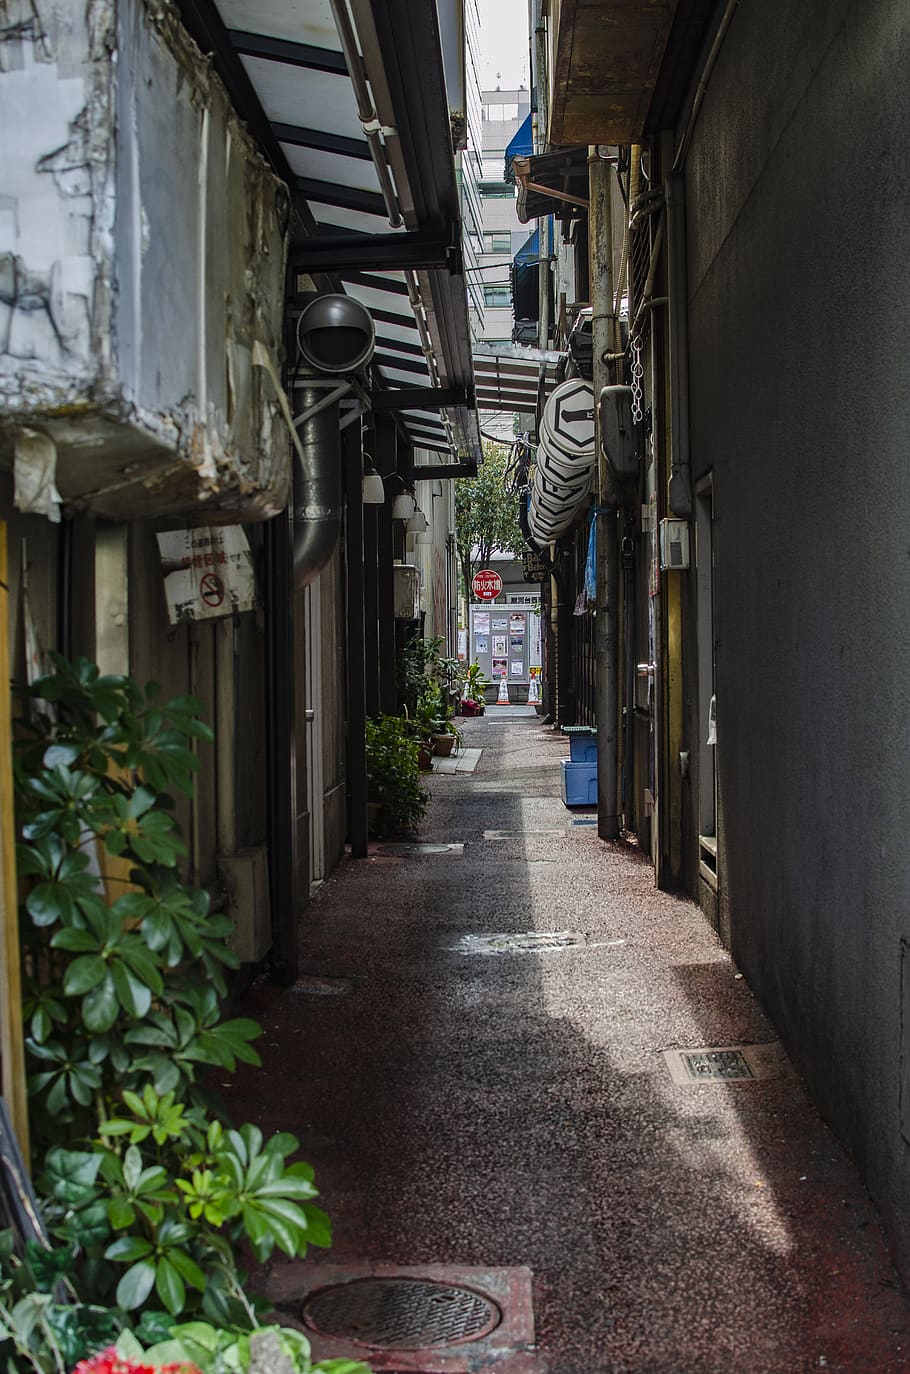 callejón, japón, urbano, turismo, tiendas, el camino a seguir, dirección, arquitectura, estructura construida, edificio